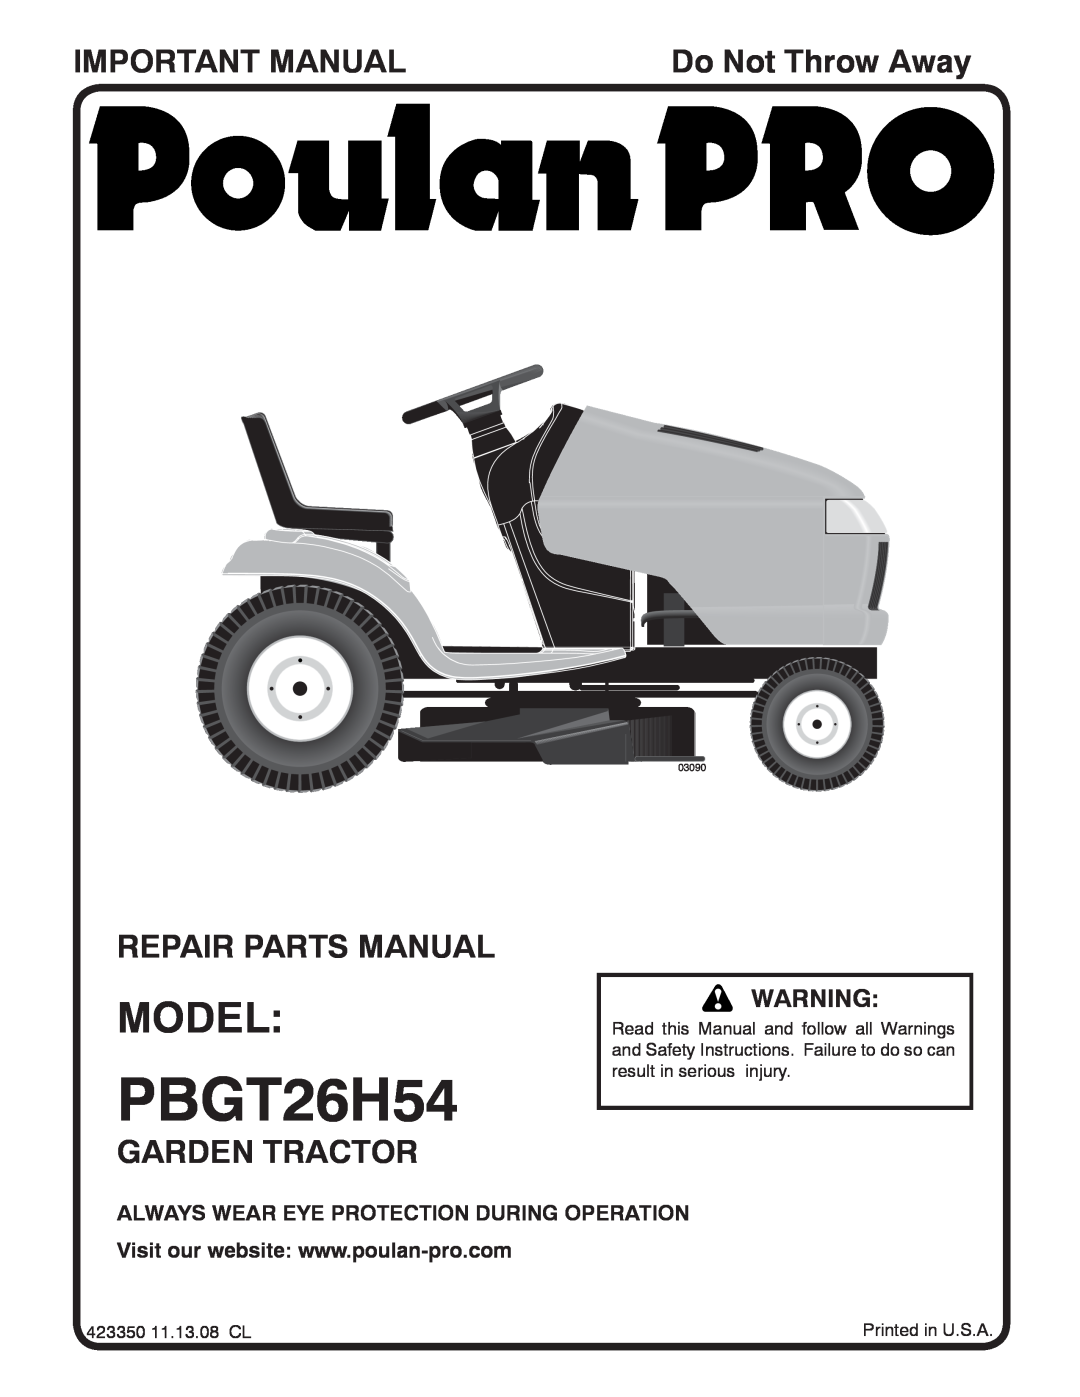 Poulan 423350 manual Important Manual, Repair Parts Manual, Garden Tractor, Do Not Throw Away, PBGT26H54, Model, 03090 